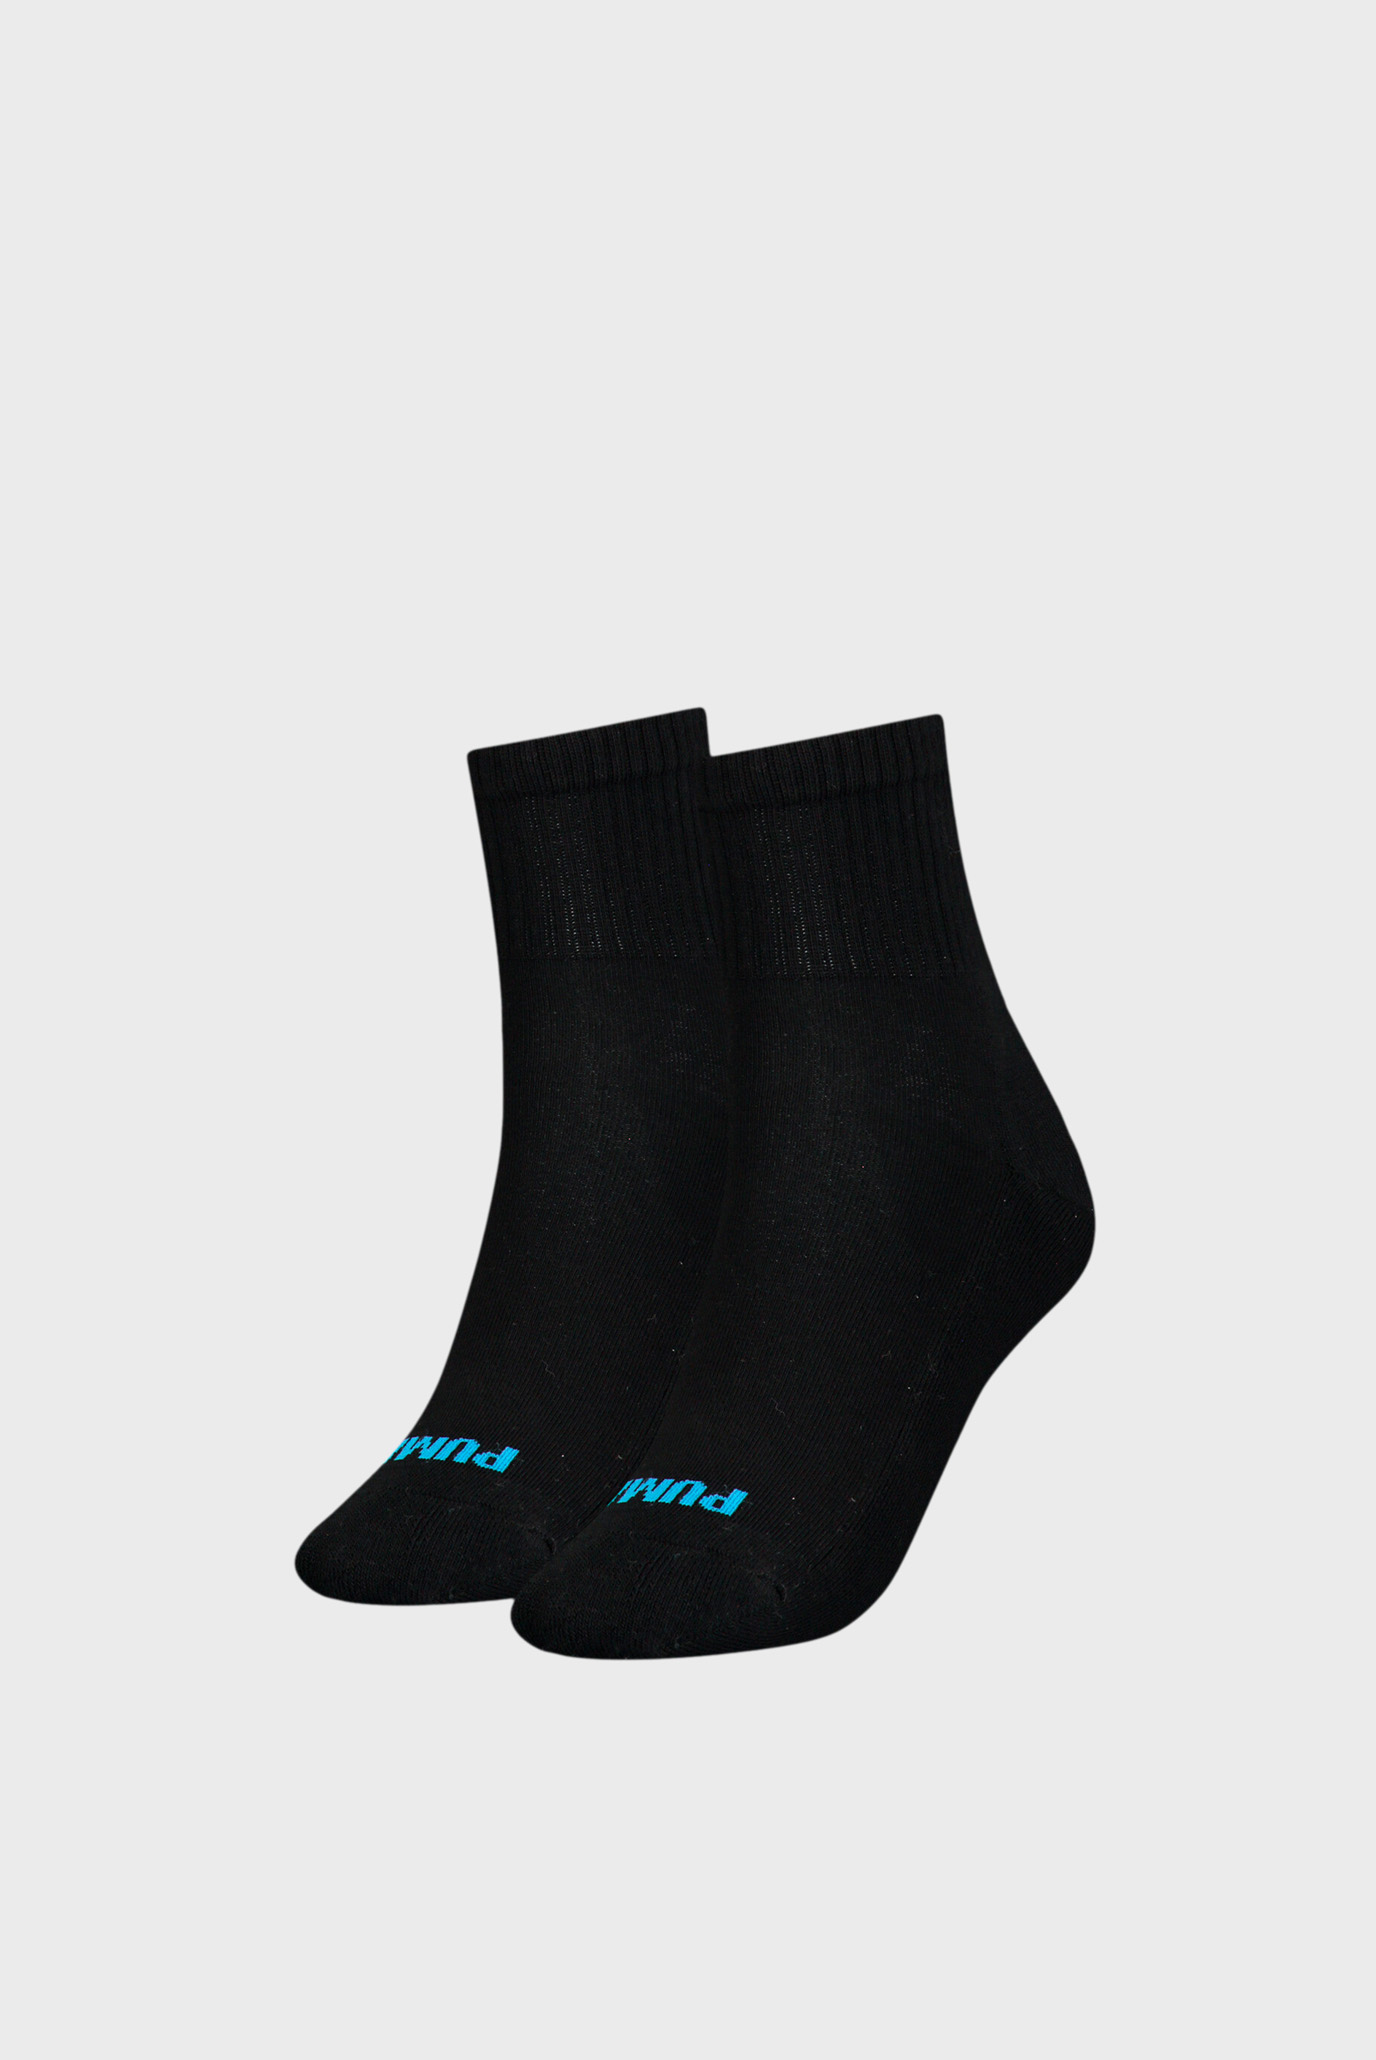 Жіночі чорні шкарпетки (2 пари) PUMA Women's Heart Short Crew Socks 1